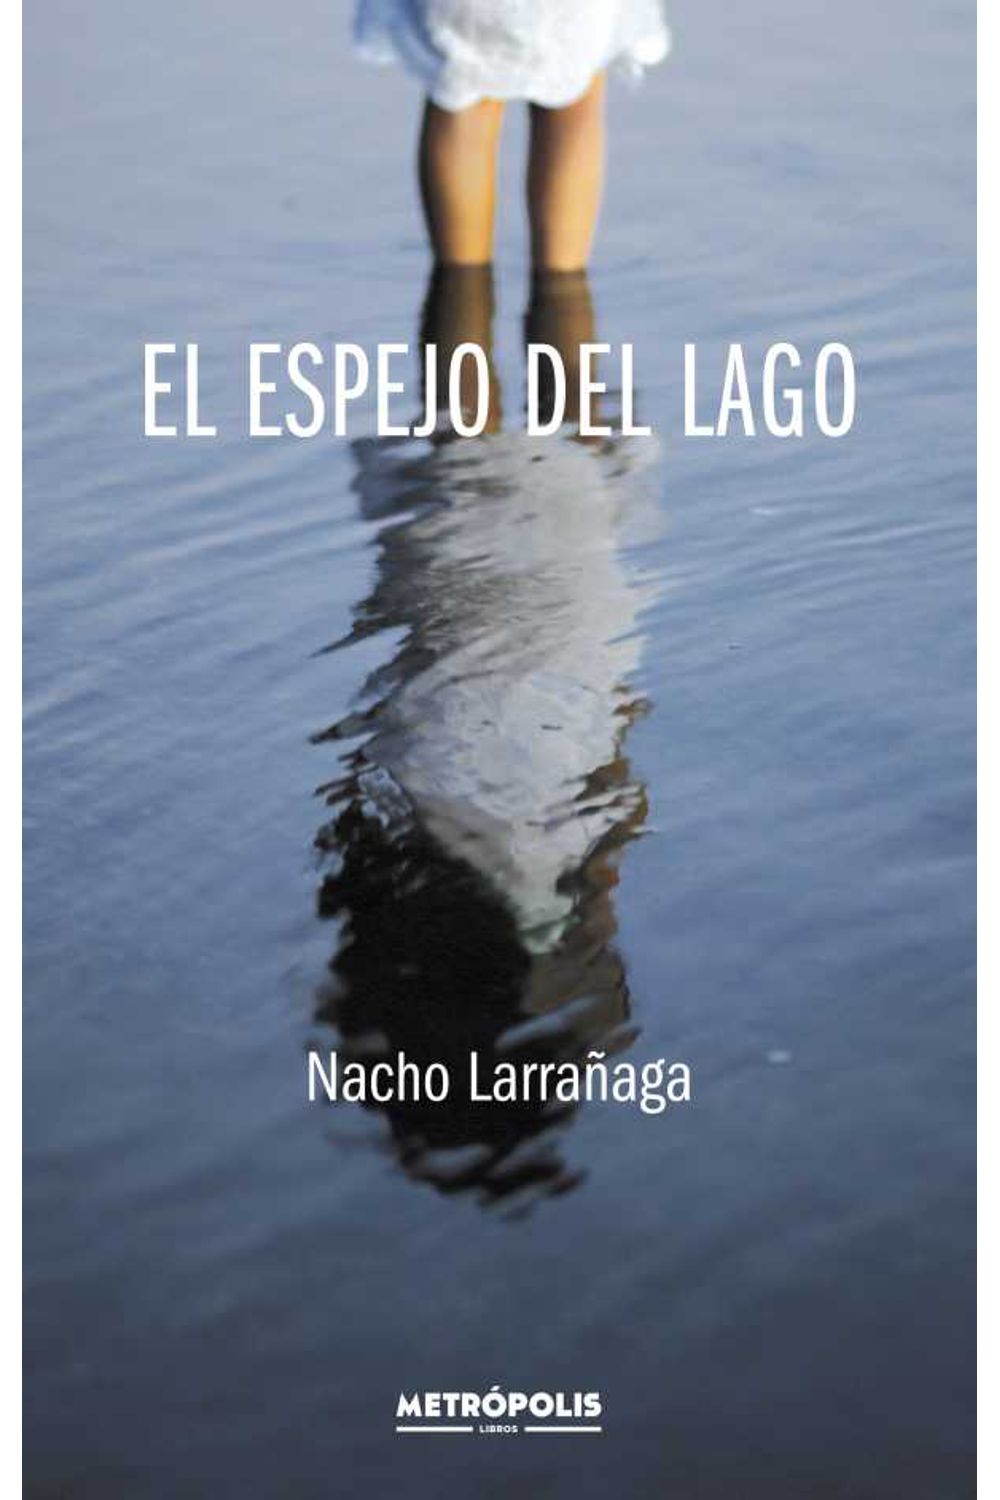 bw-el-espejo-del-lago-metrpolis-libros-9789874188717